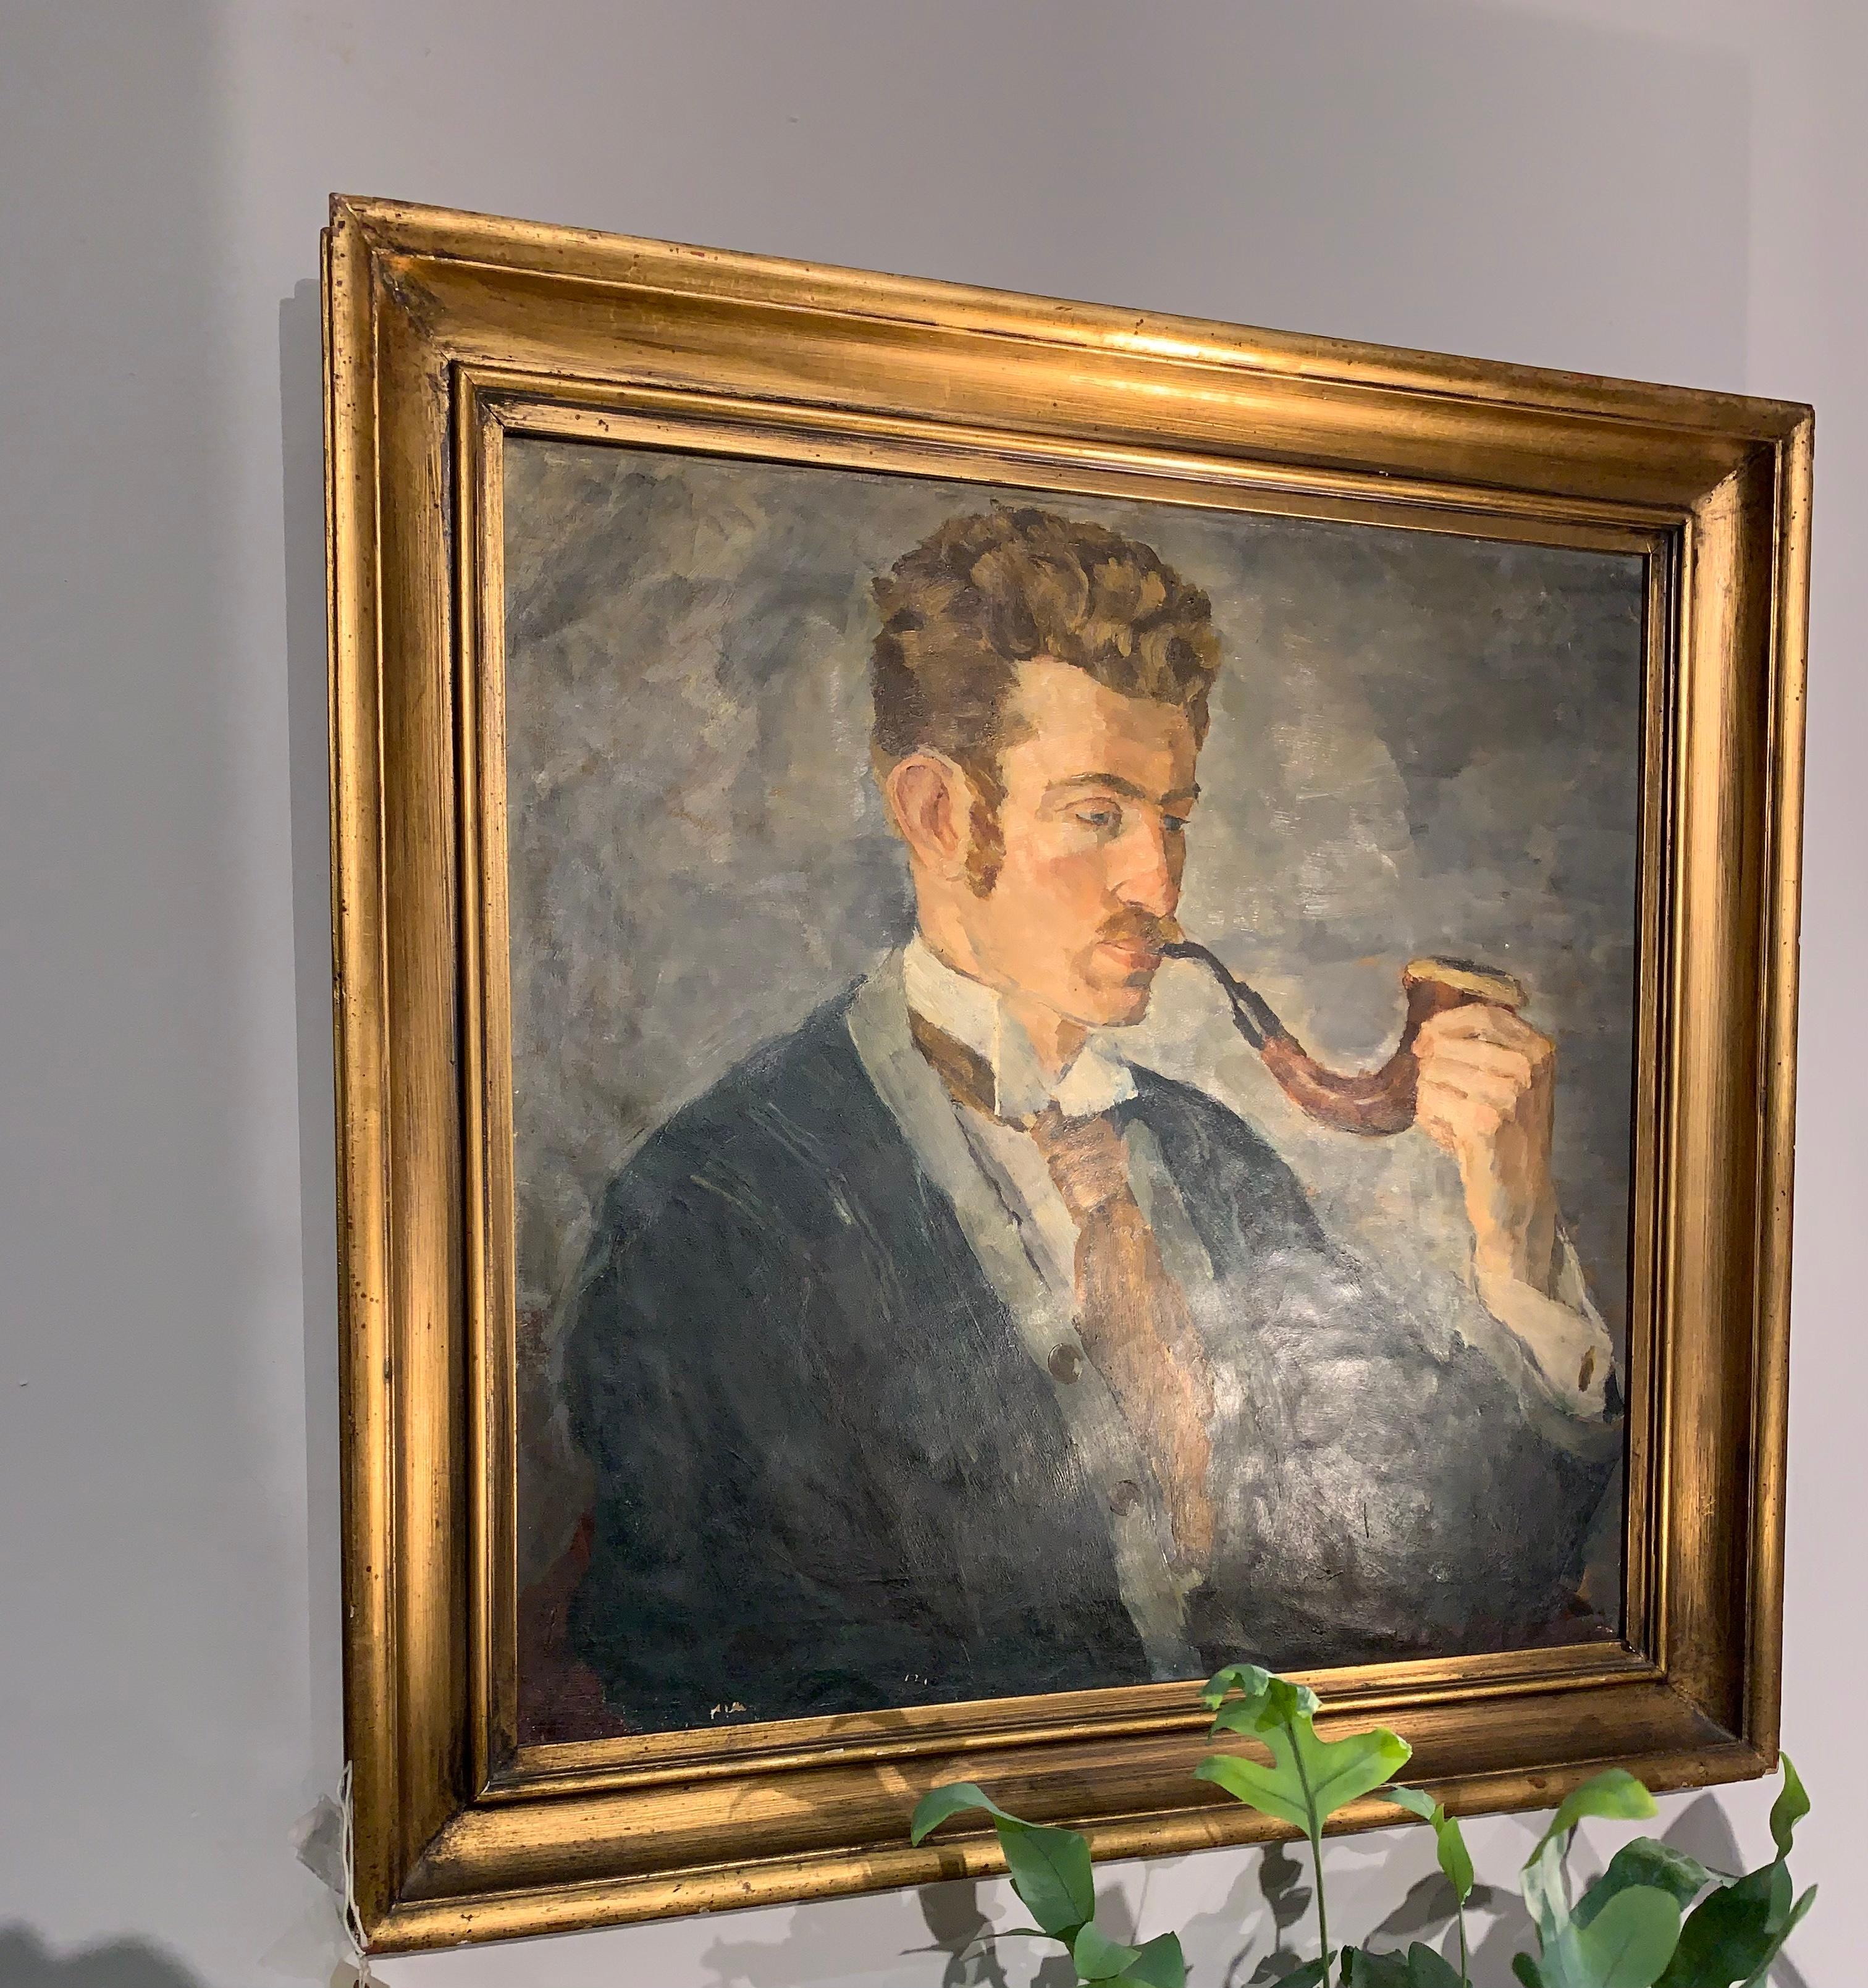 Charmante peinture à l'huile encadrée datant des années 1920 représentant un homme portant une chemise, une cravate et un gilet sous une veste bleue et fumant une grosse pipe.
Il a un aspect presque érudit et a été peint et signé par l'artiste